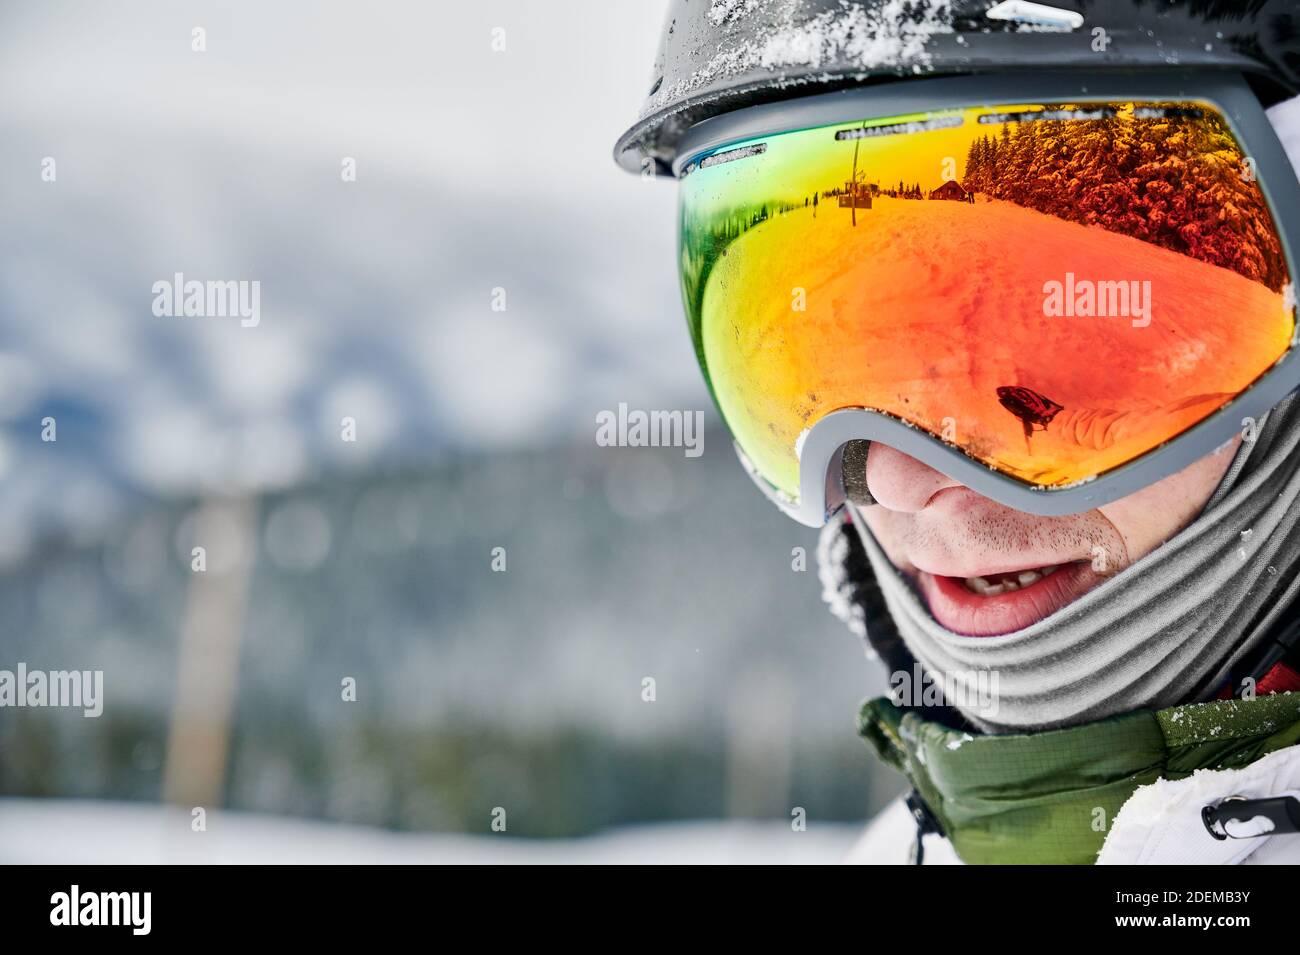 Primo piano immagine ritagliata di un uomo che indossa occhiali da sci con riflesso della pista innevata. Occhiali luminosi che riflettono la natura in inverno. Concetto di stile di vita attivo Foto Stock